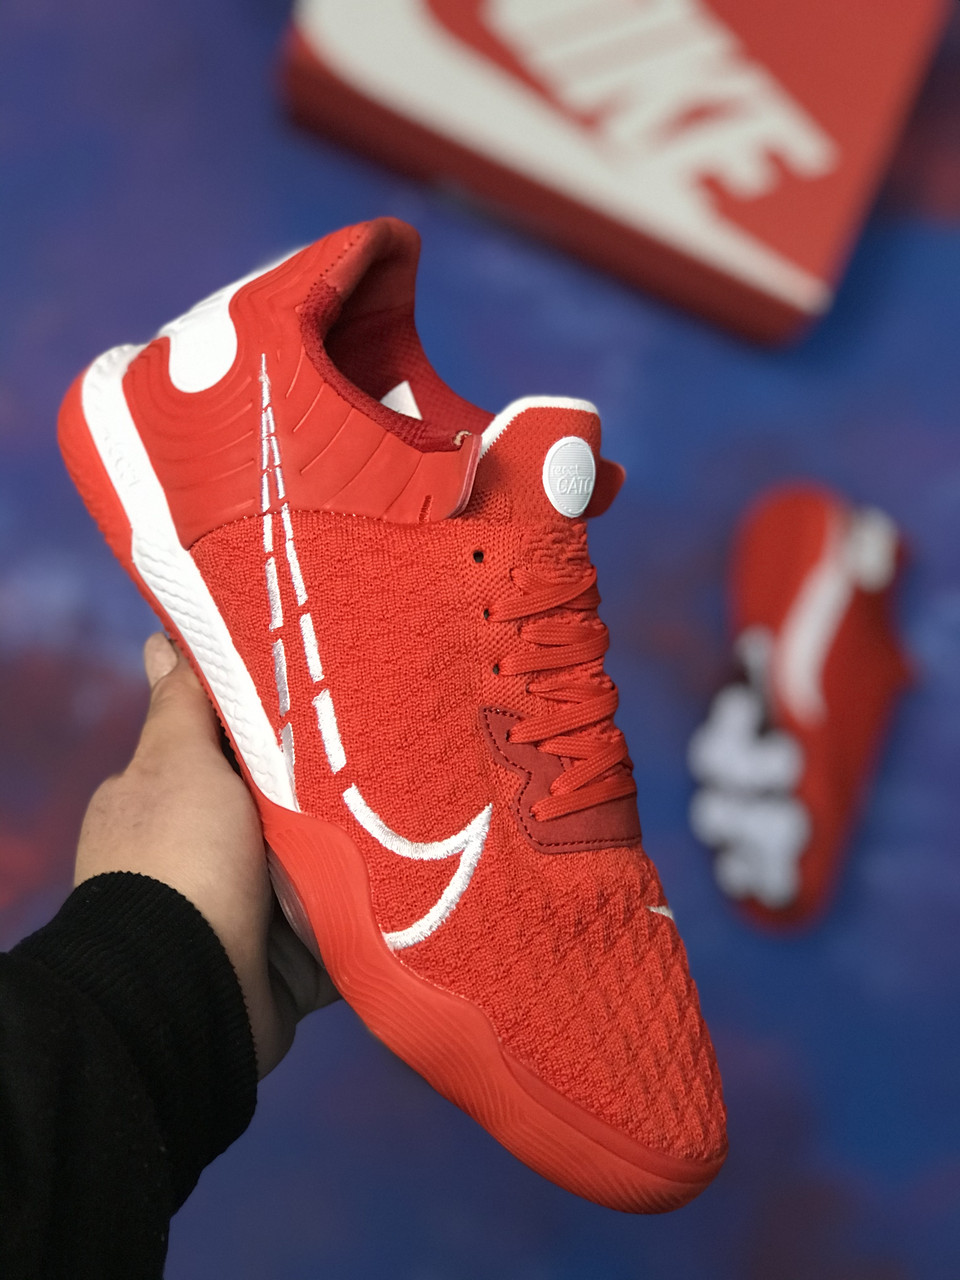 

Футзалки Nike React Gato найк гато футбольная обувь для зала, Красный